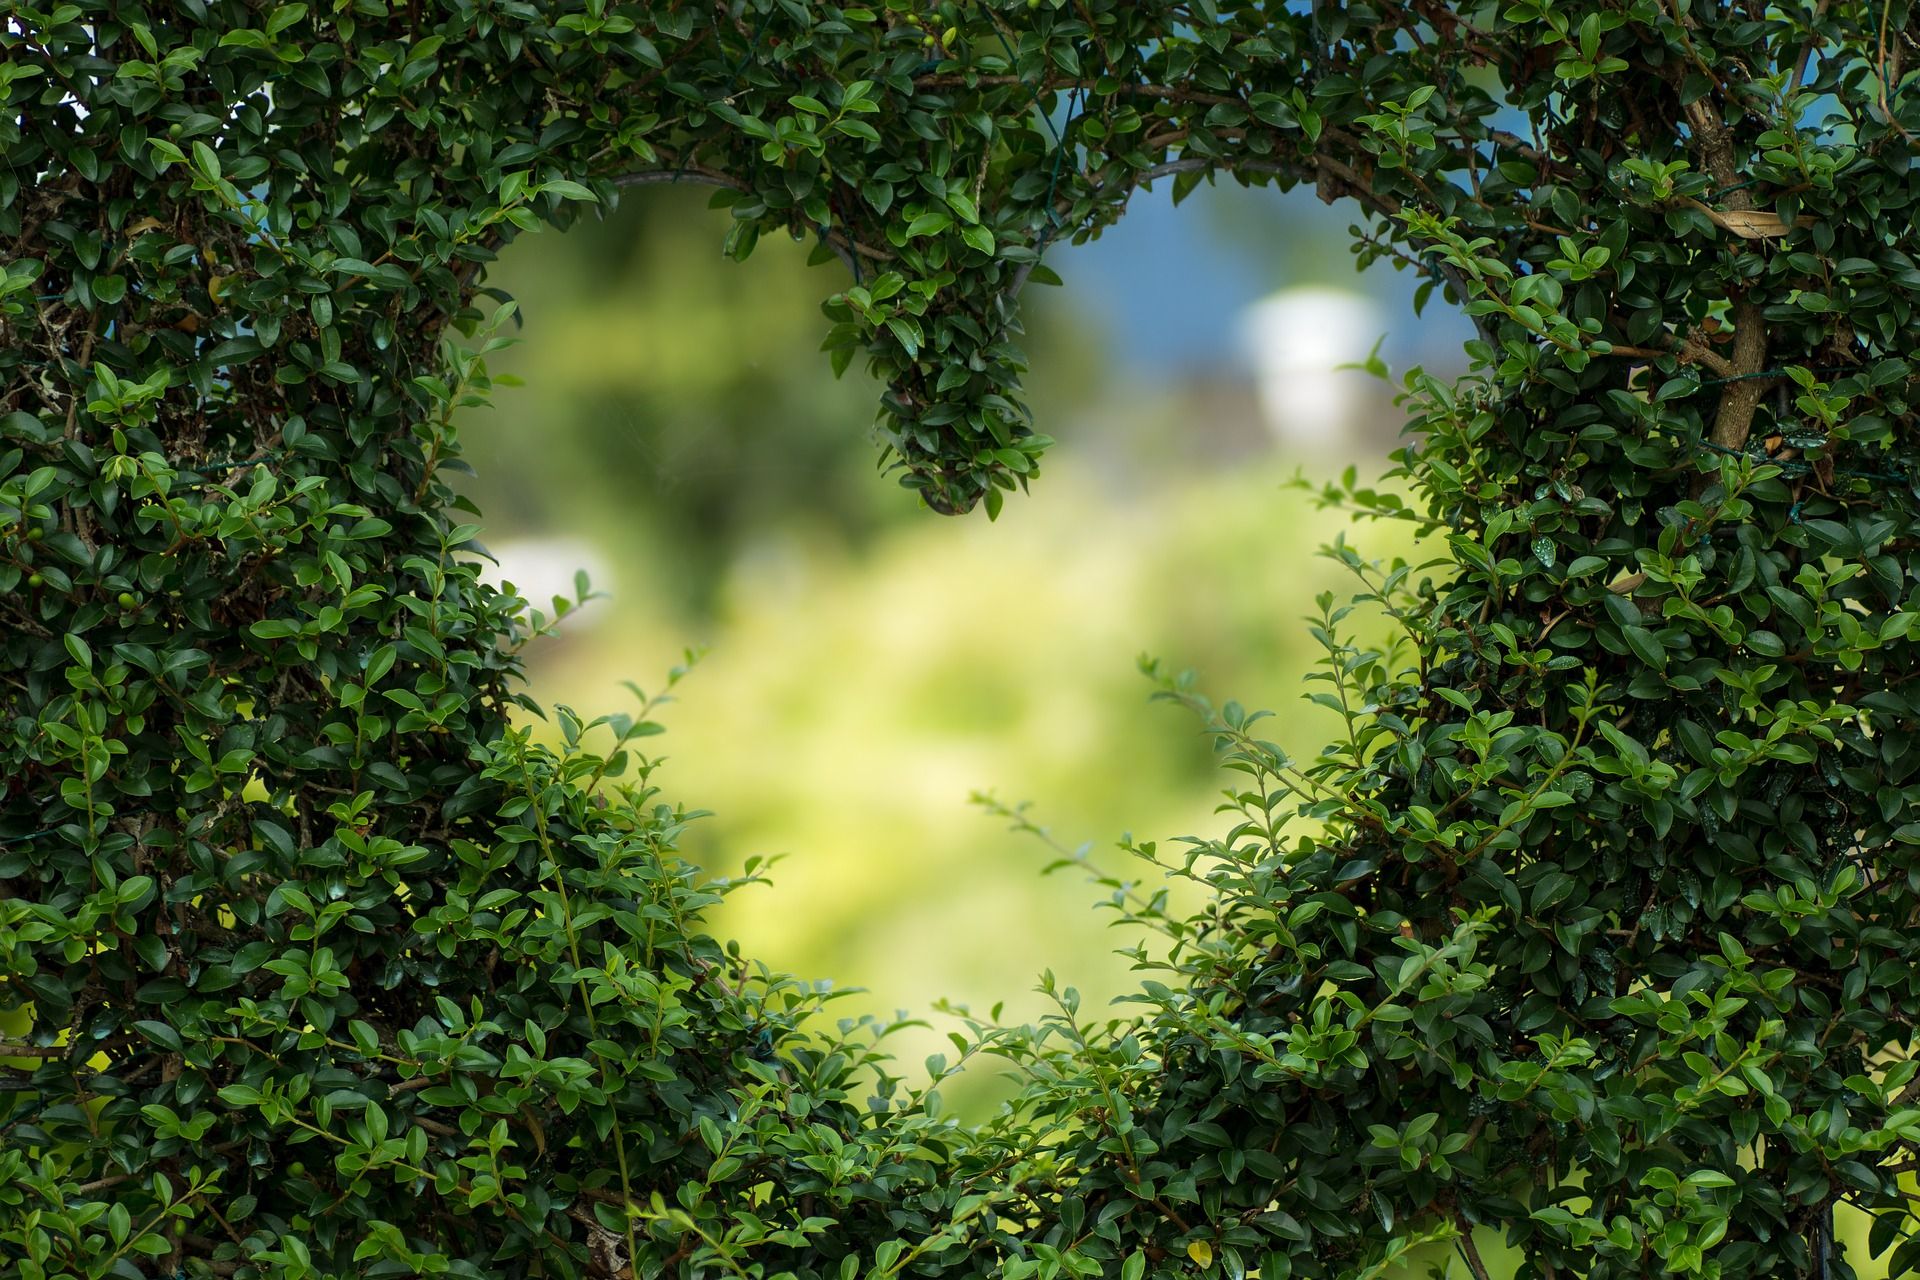 haie de buis taillée avec une ouverture en forme de coeur sur https://pixabay.com/fr/photos/c%C5%93ur-feuilles-feuillage-jardin-1192662/